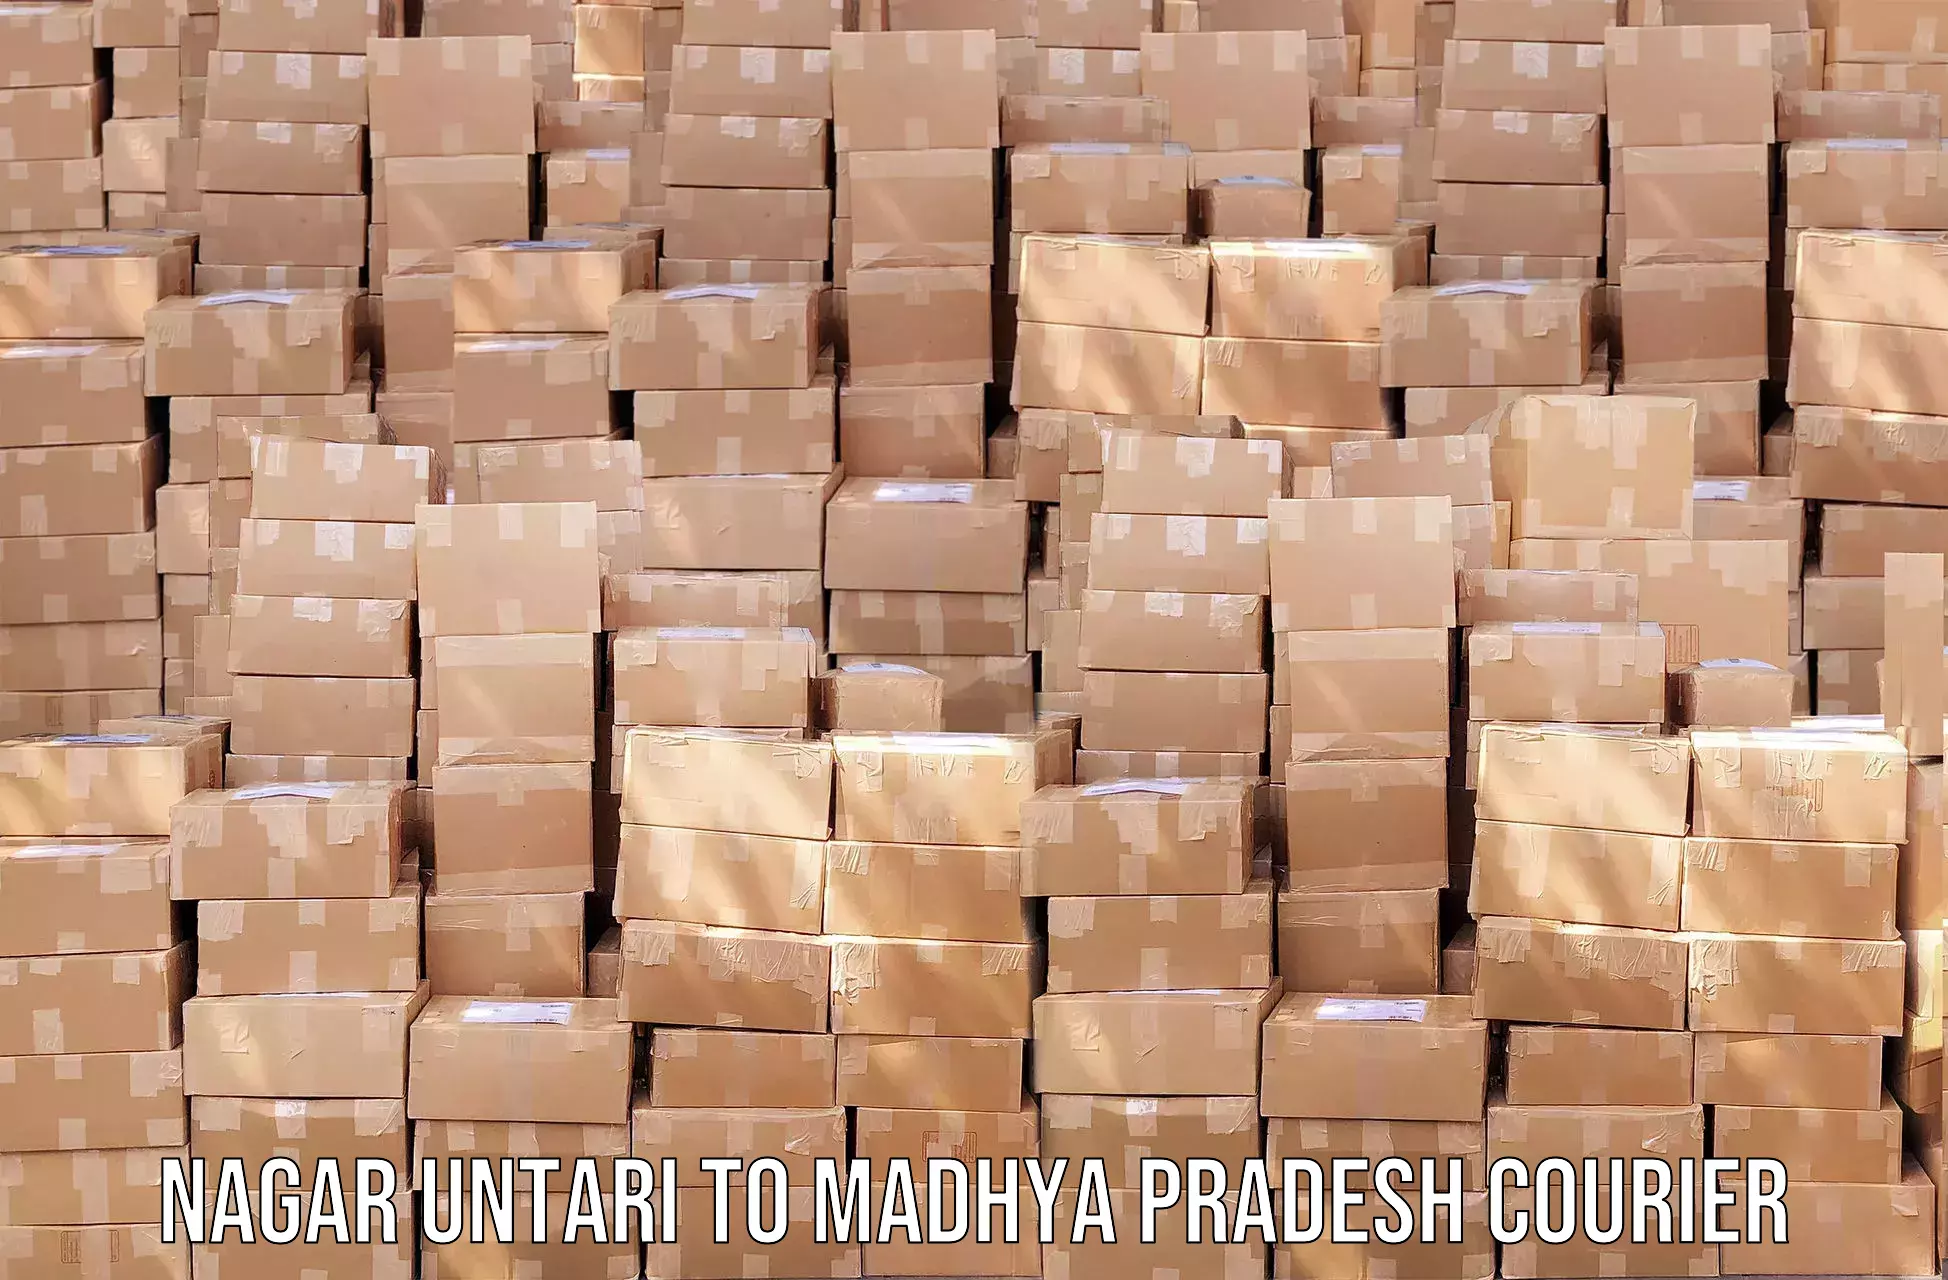 State-of-the-art courier technology Nagar Untari to Madhya Pradesh